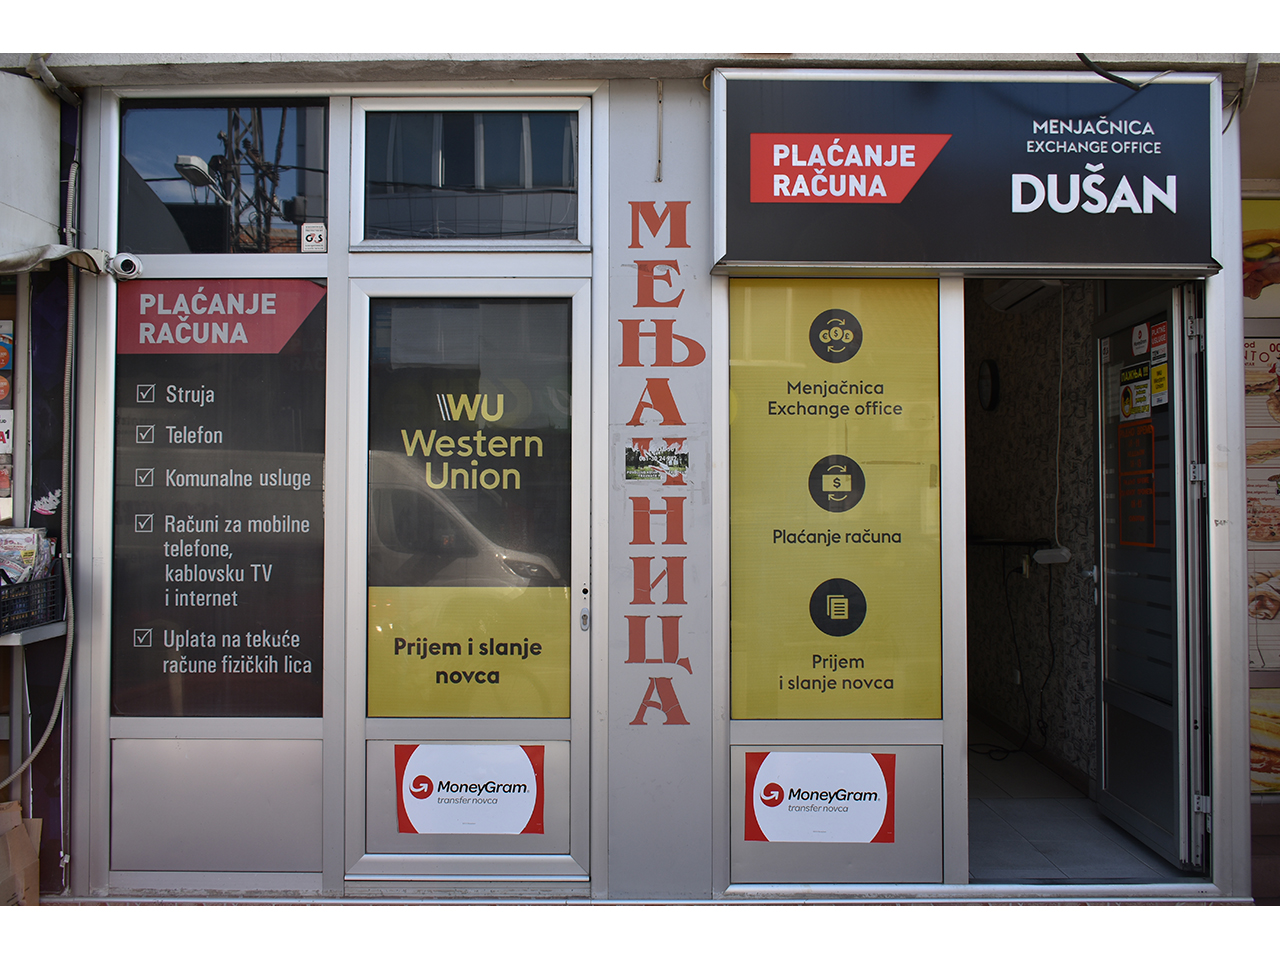 DUSAN EXCHANGE OFFICE Exchange office Beograd